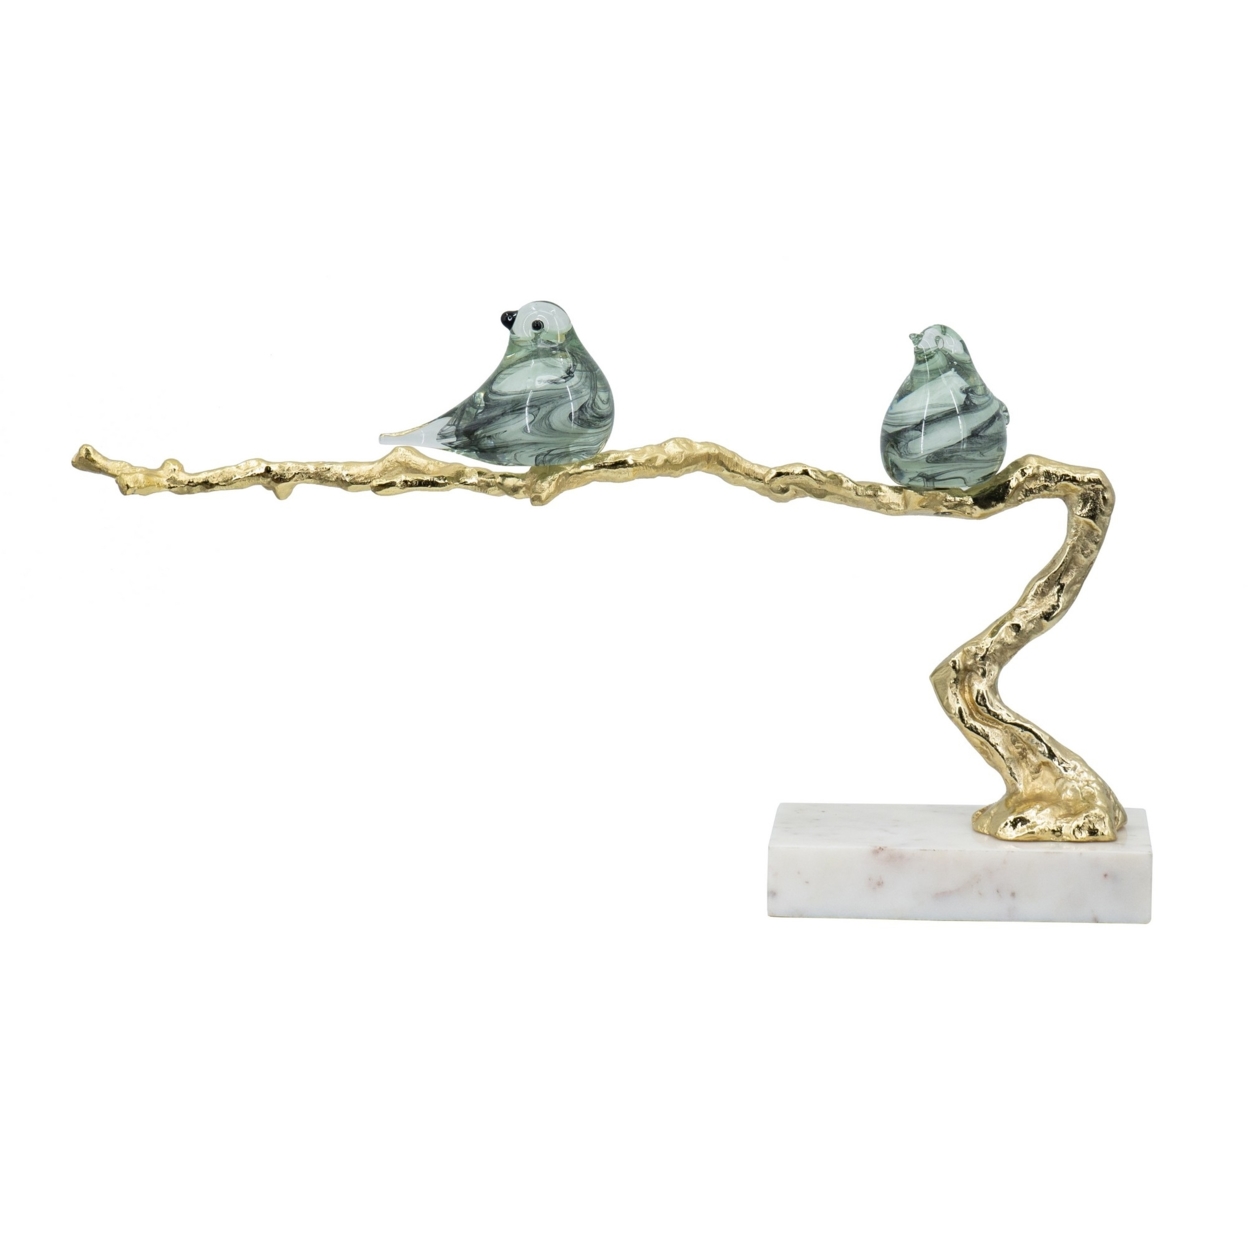 Sue 25 Inch Accent Decor Sculpture, 2 Birds Sitting On Branch, Gold, White- Saltoro Sherpi